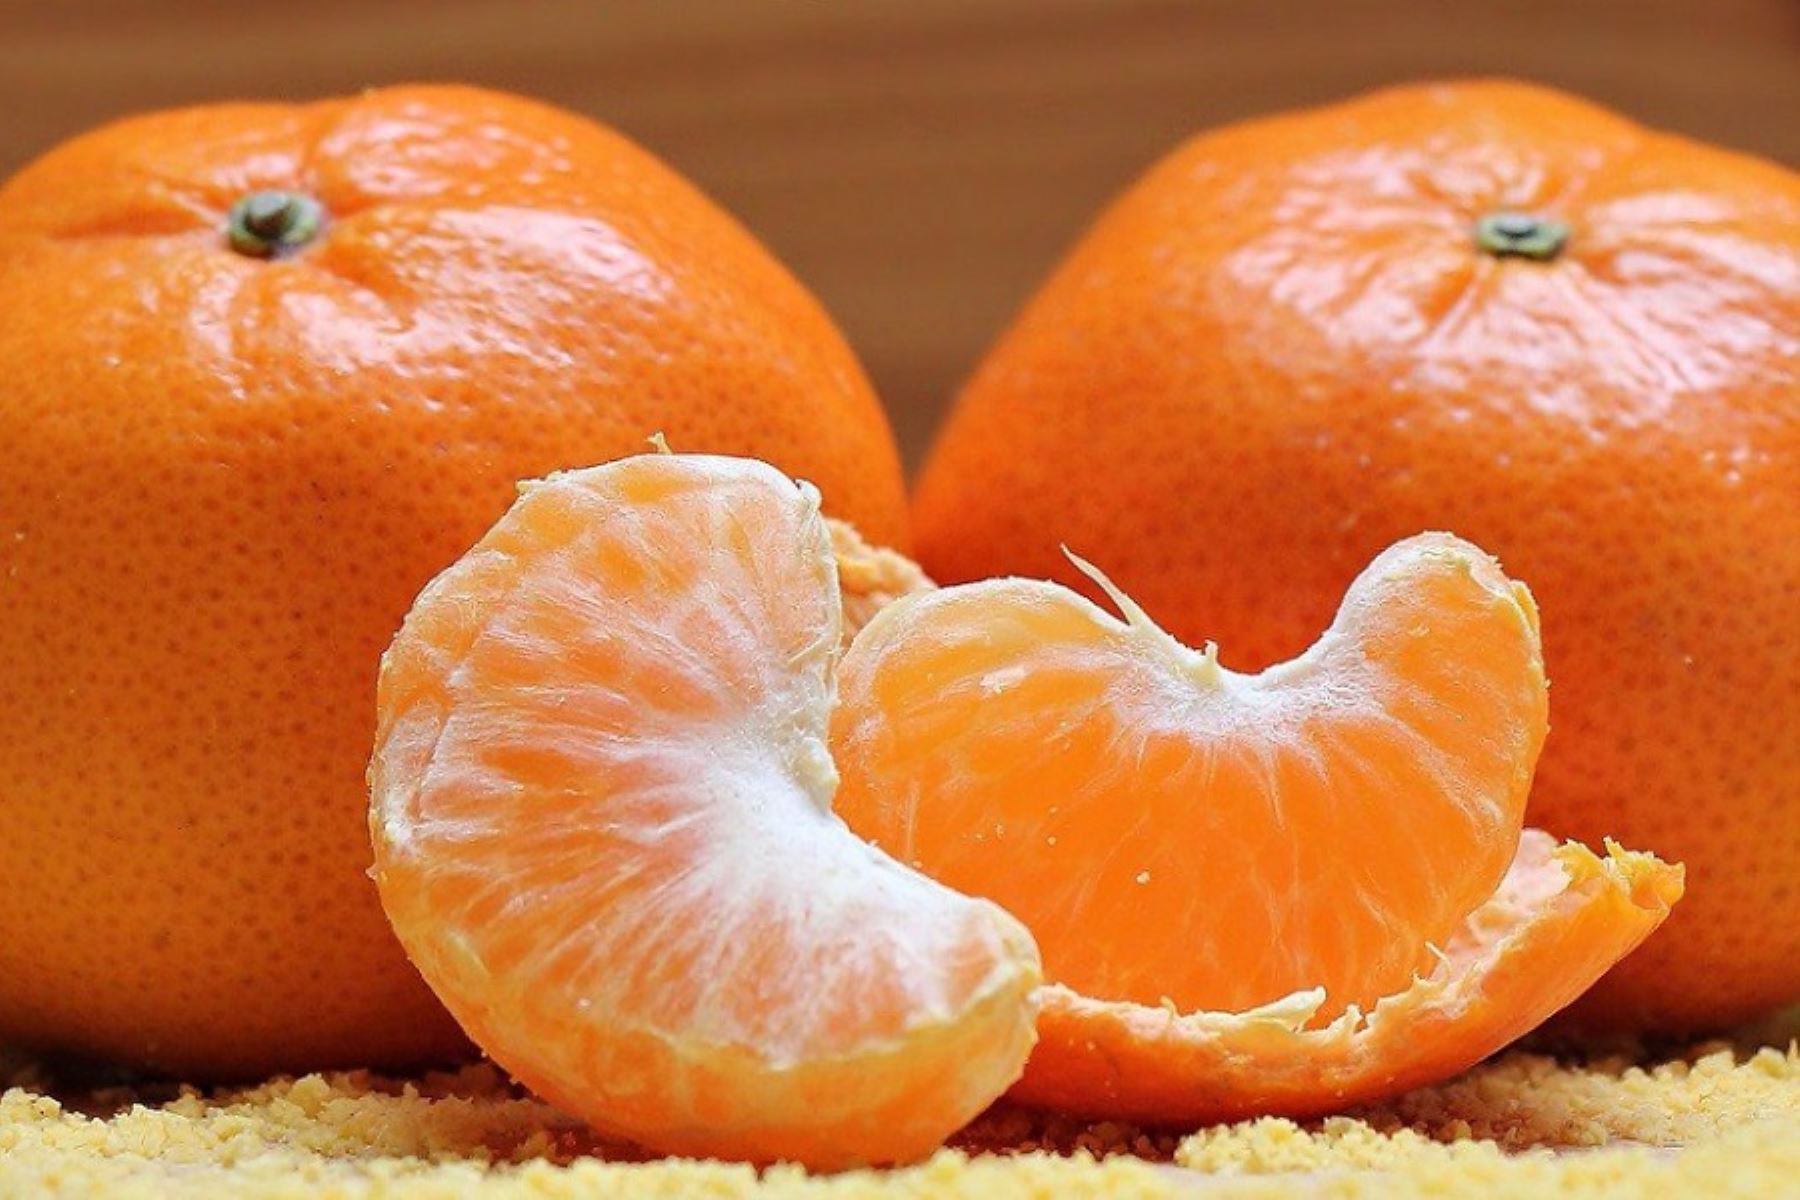 La mandarina destaca por su elevada concentración de vitamina C, antioxidantes, minerales y otros importantes nutrientes que mejoran el funcionamiento de nuestro organismo y fortalecen el sistema inmune para prevenir y enfrentar mejor a diversas enfermedades.